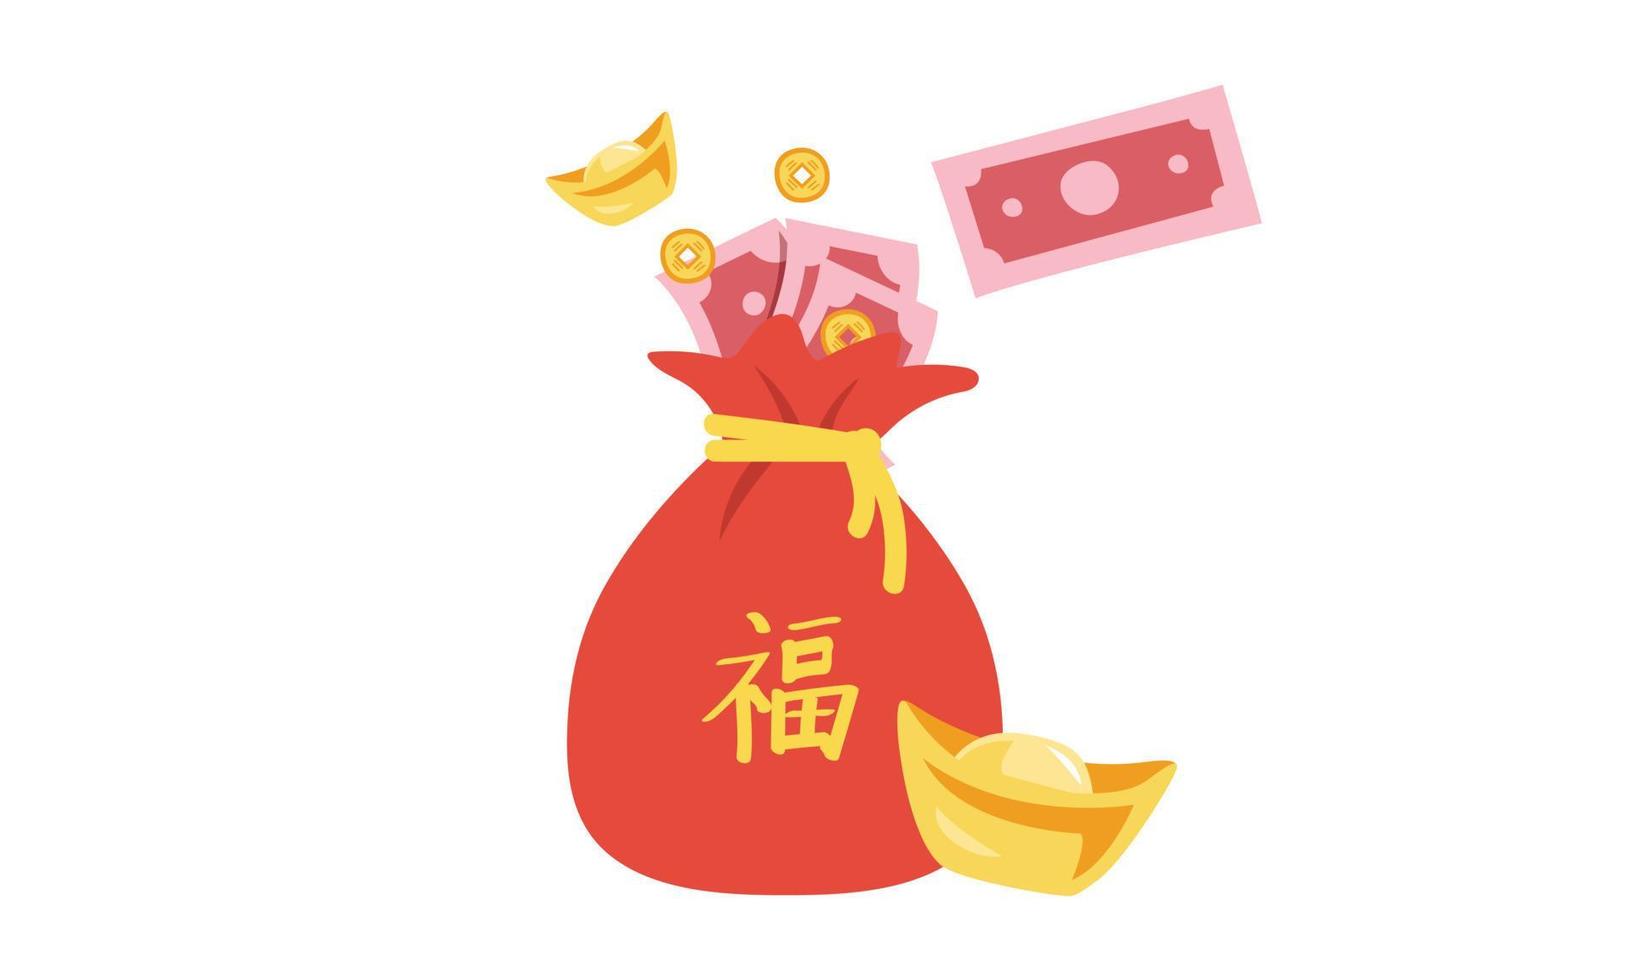 chinesisches neujahr geldsack clipart. einfache rote tasche voller papiergeld, münzen und goldener barren flache vektorillustration cartoon-zeichnung. chinesischer text bedeutet viel glück. asiatisches mondneujahrskonzept vektor